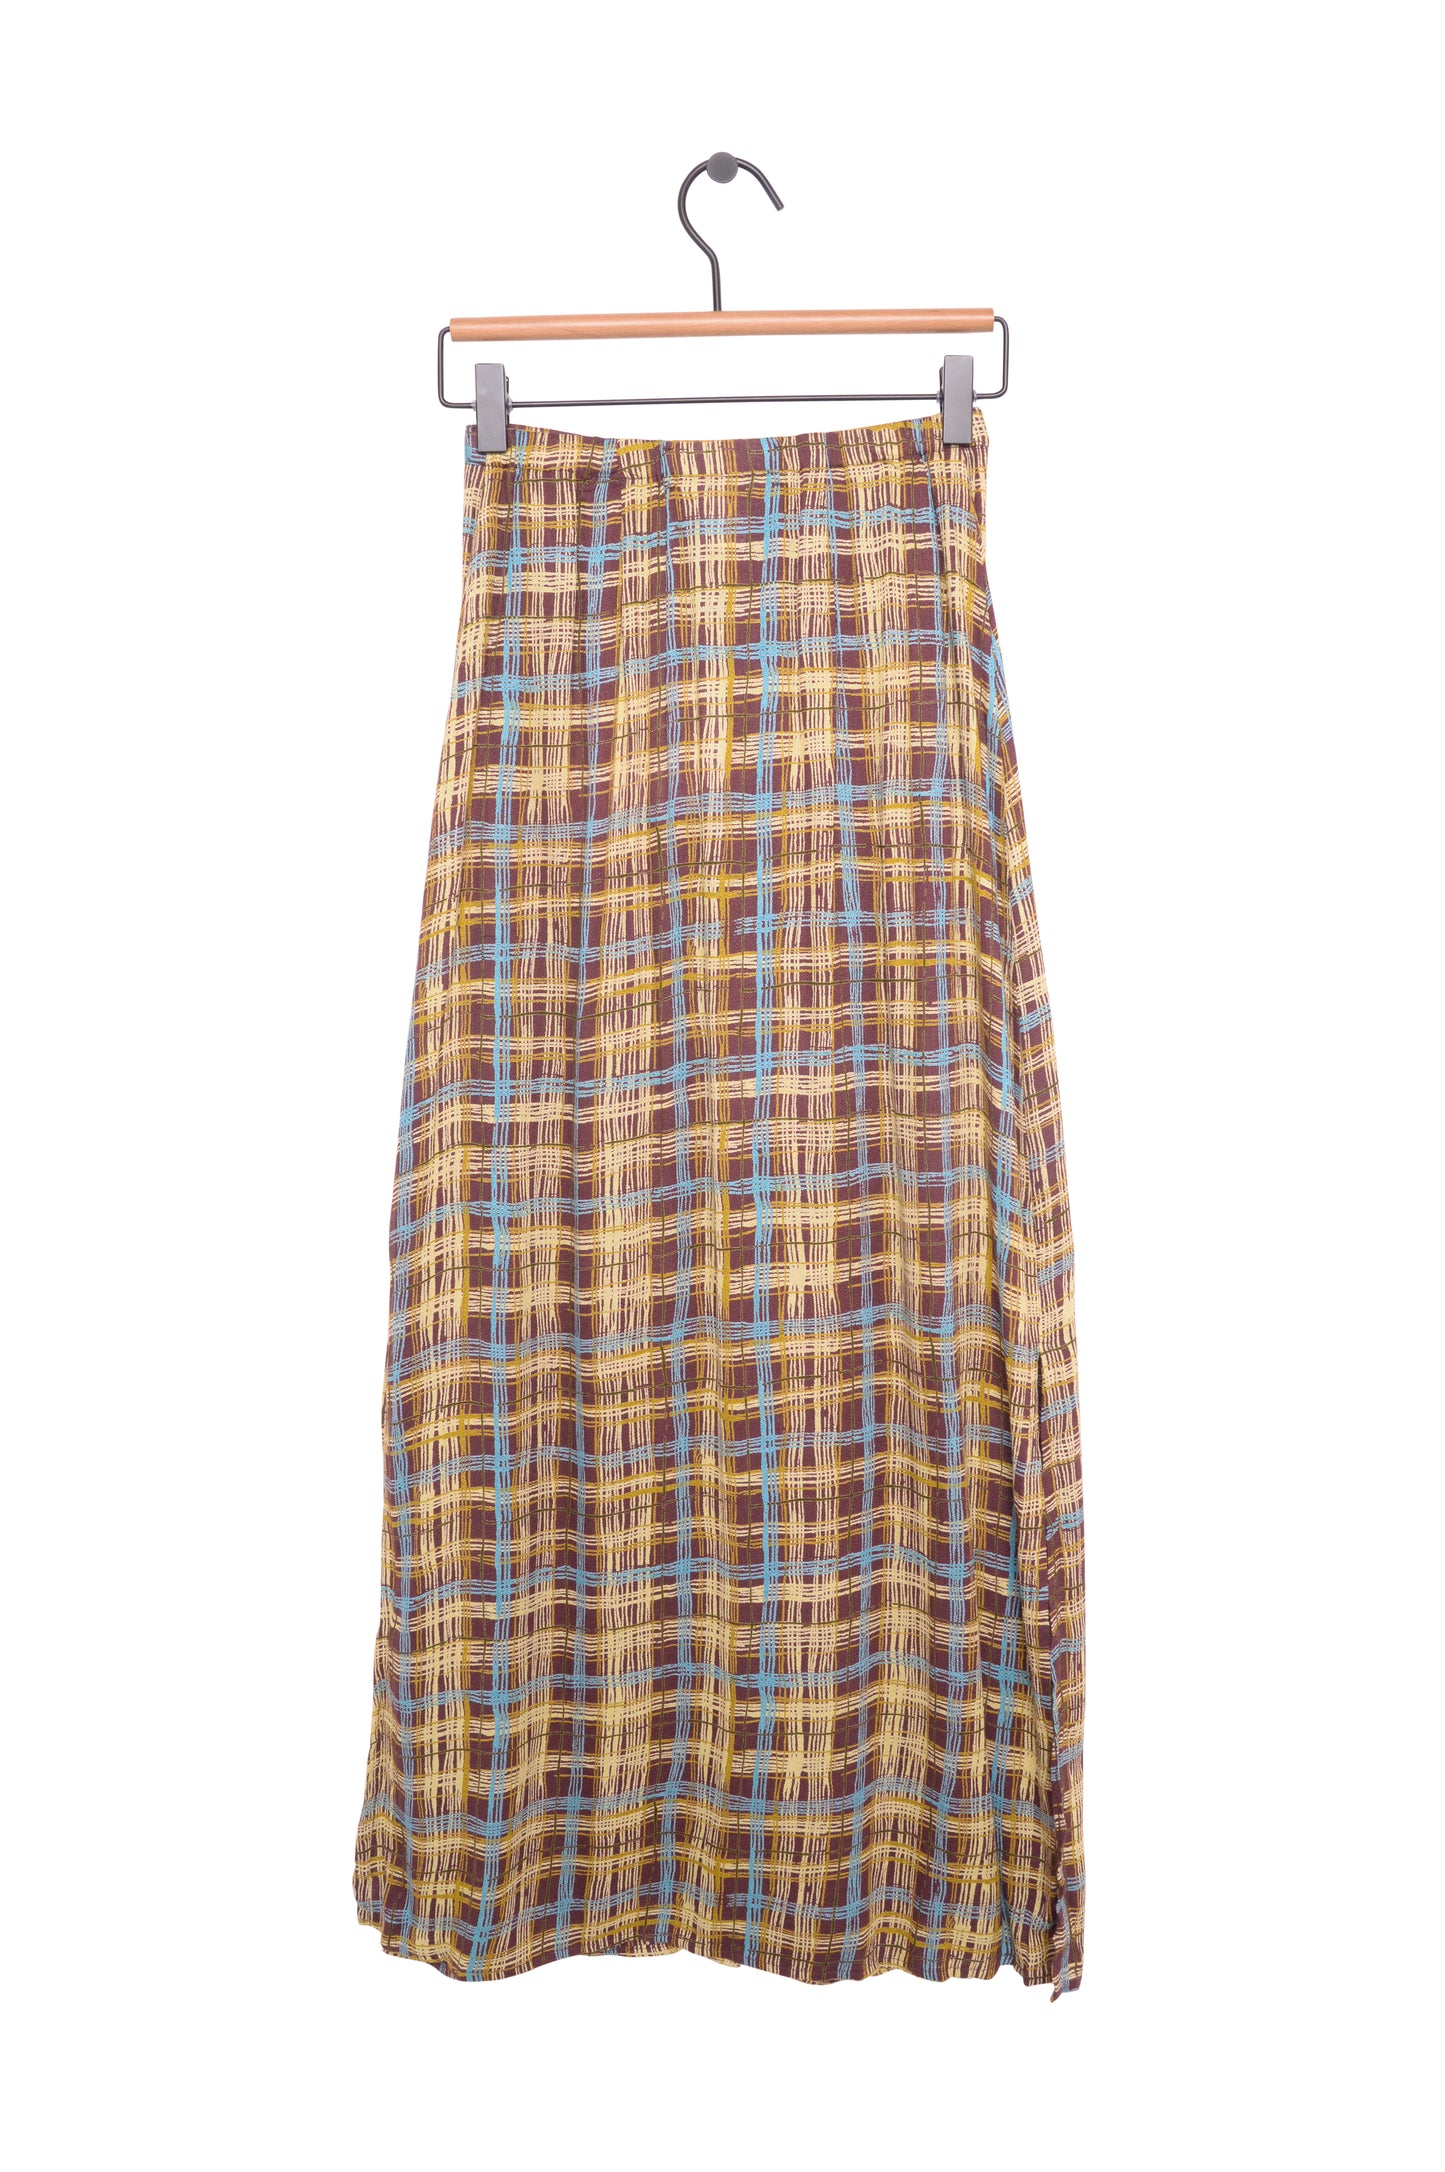 Plaid Rayon Maxi Skirt USA